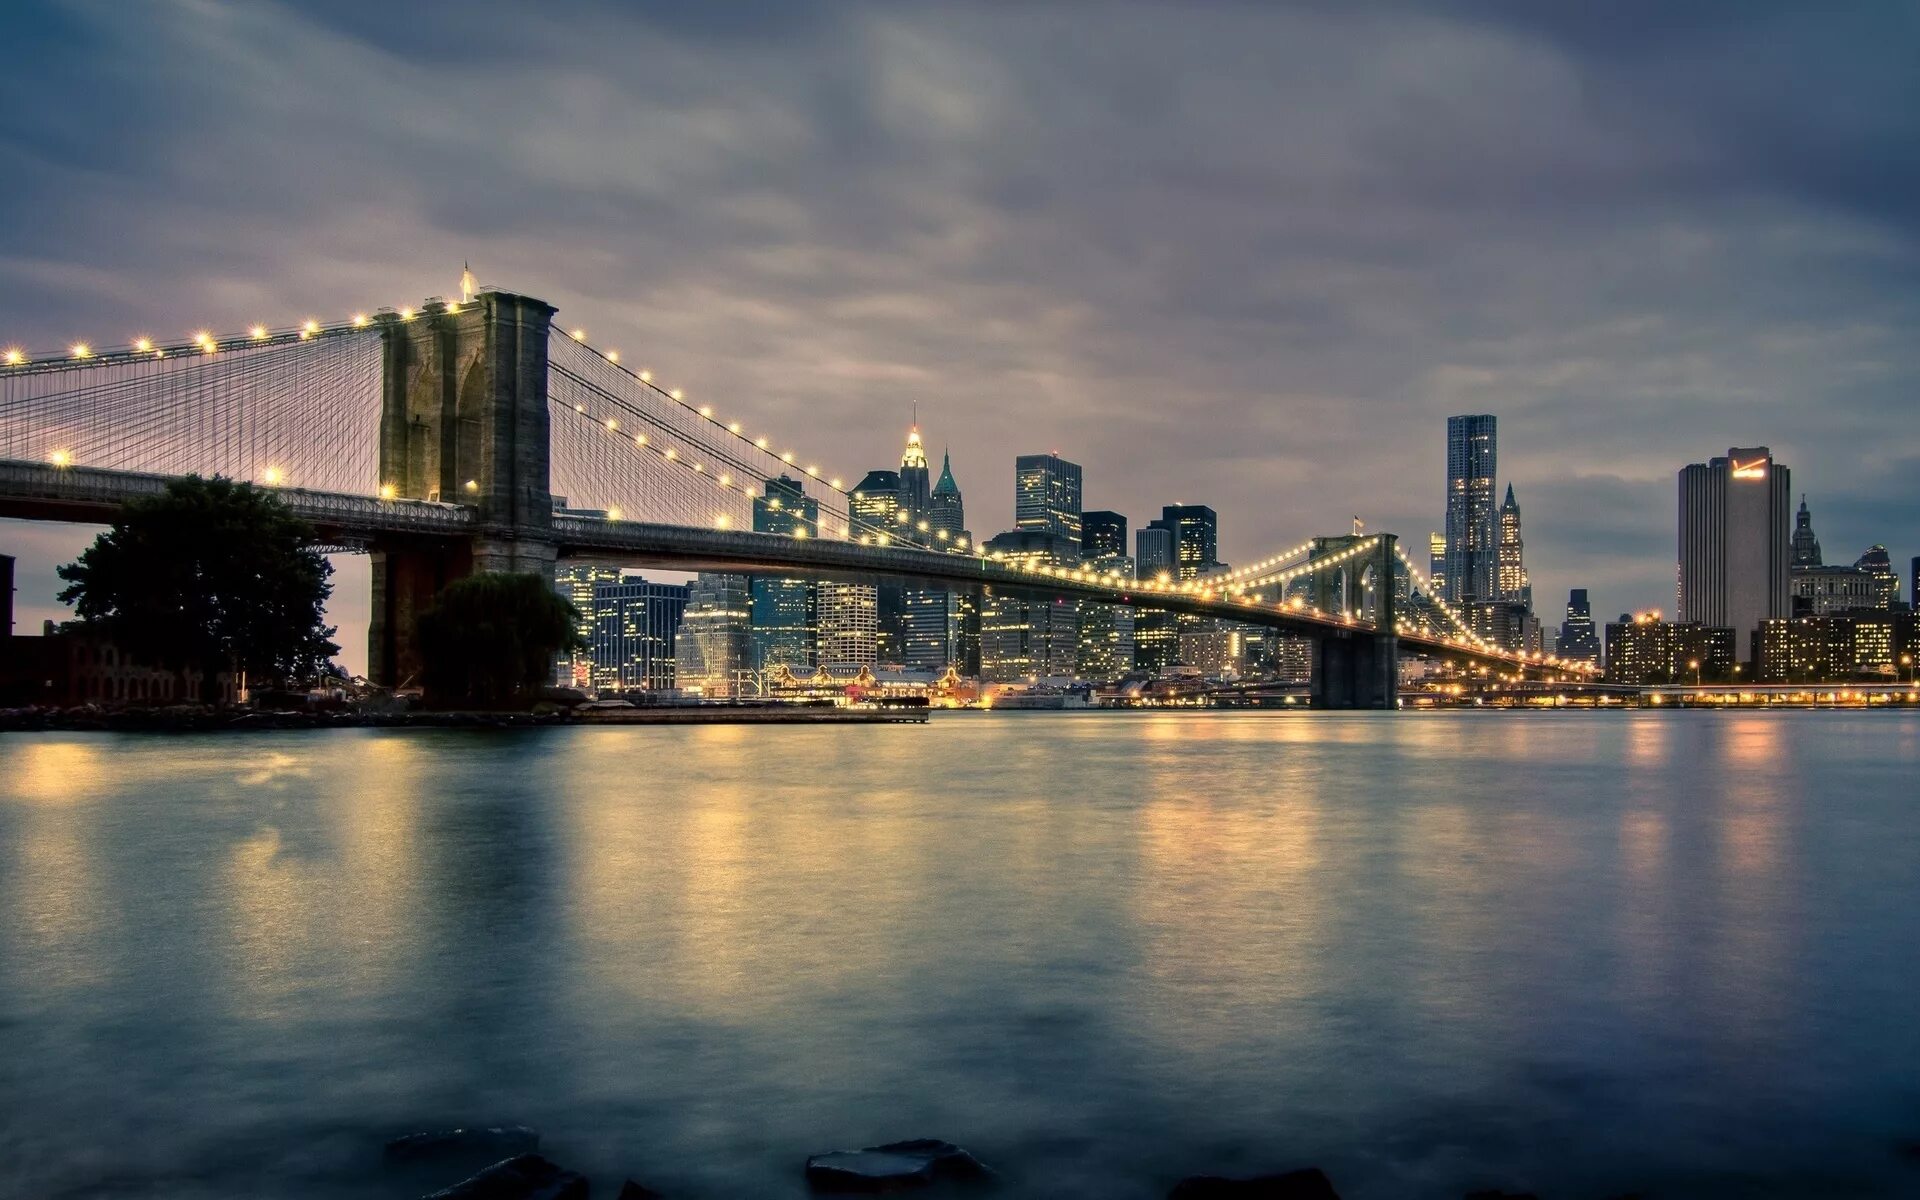 Обои для рабочего стола 2560х1440 высокого. Буринский мост Нью-Йорк. Манхэттен мост Нью-Йорк. Бруклинский мост (г. Нью-Йорк). Бруклинский мост Нью-Йорк панорама.